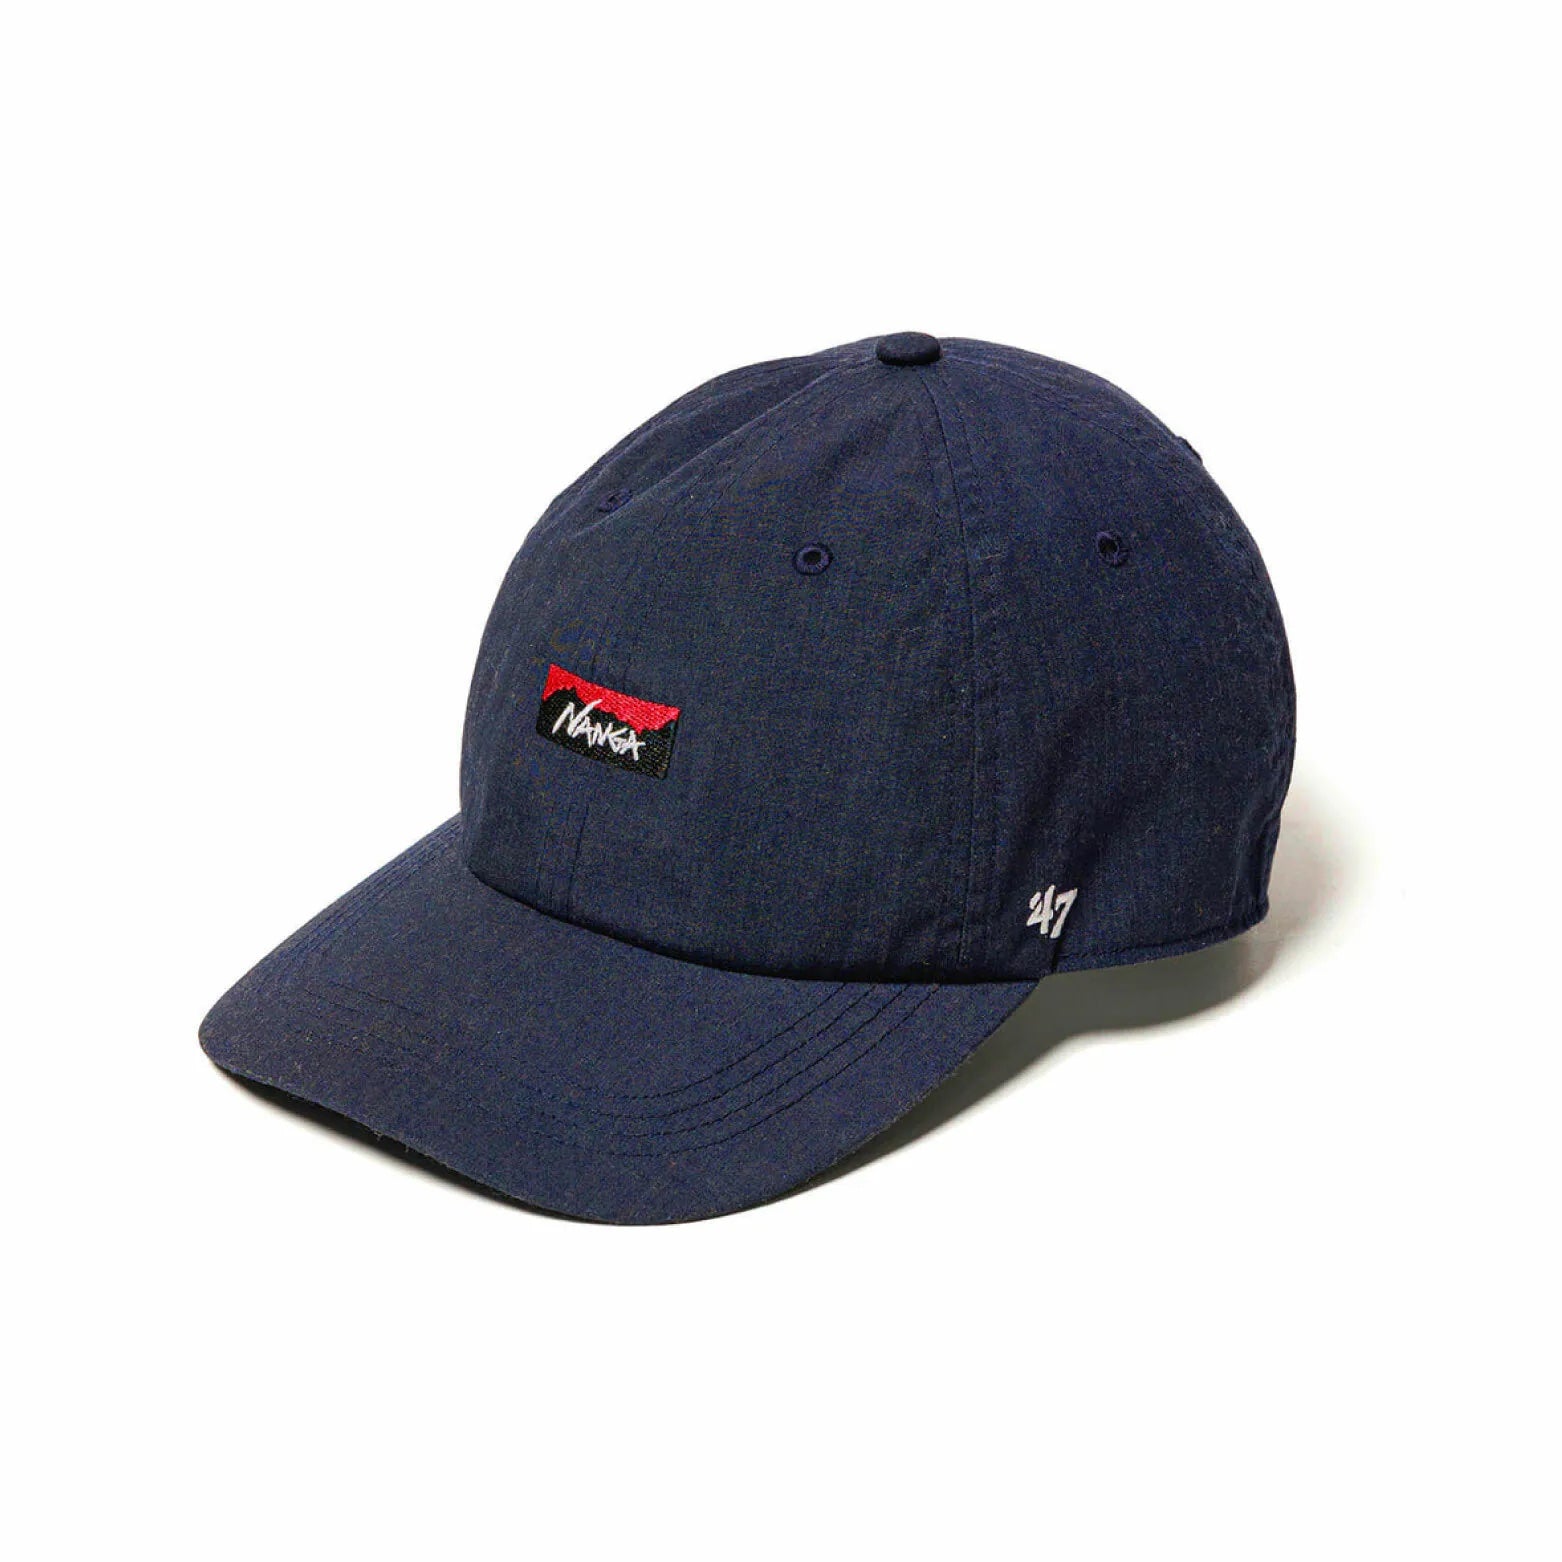 Nanga×47 Hinoc Cap 棒球帽 NA 32410